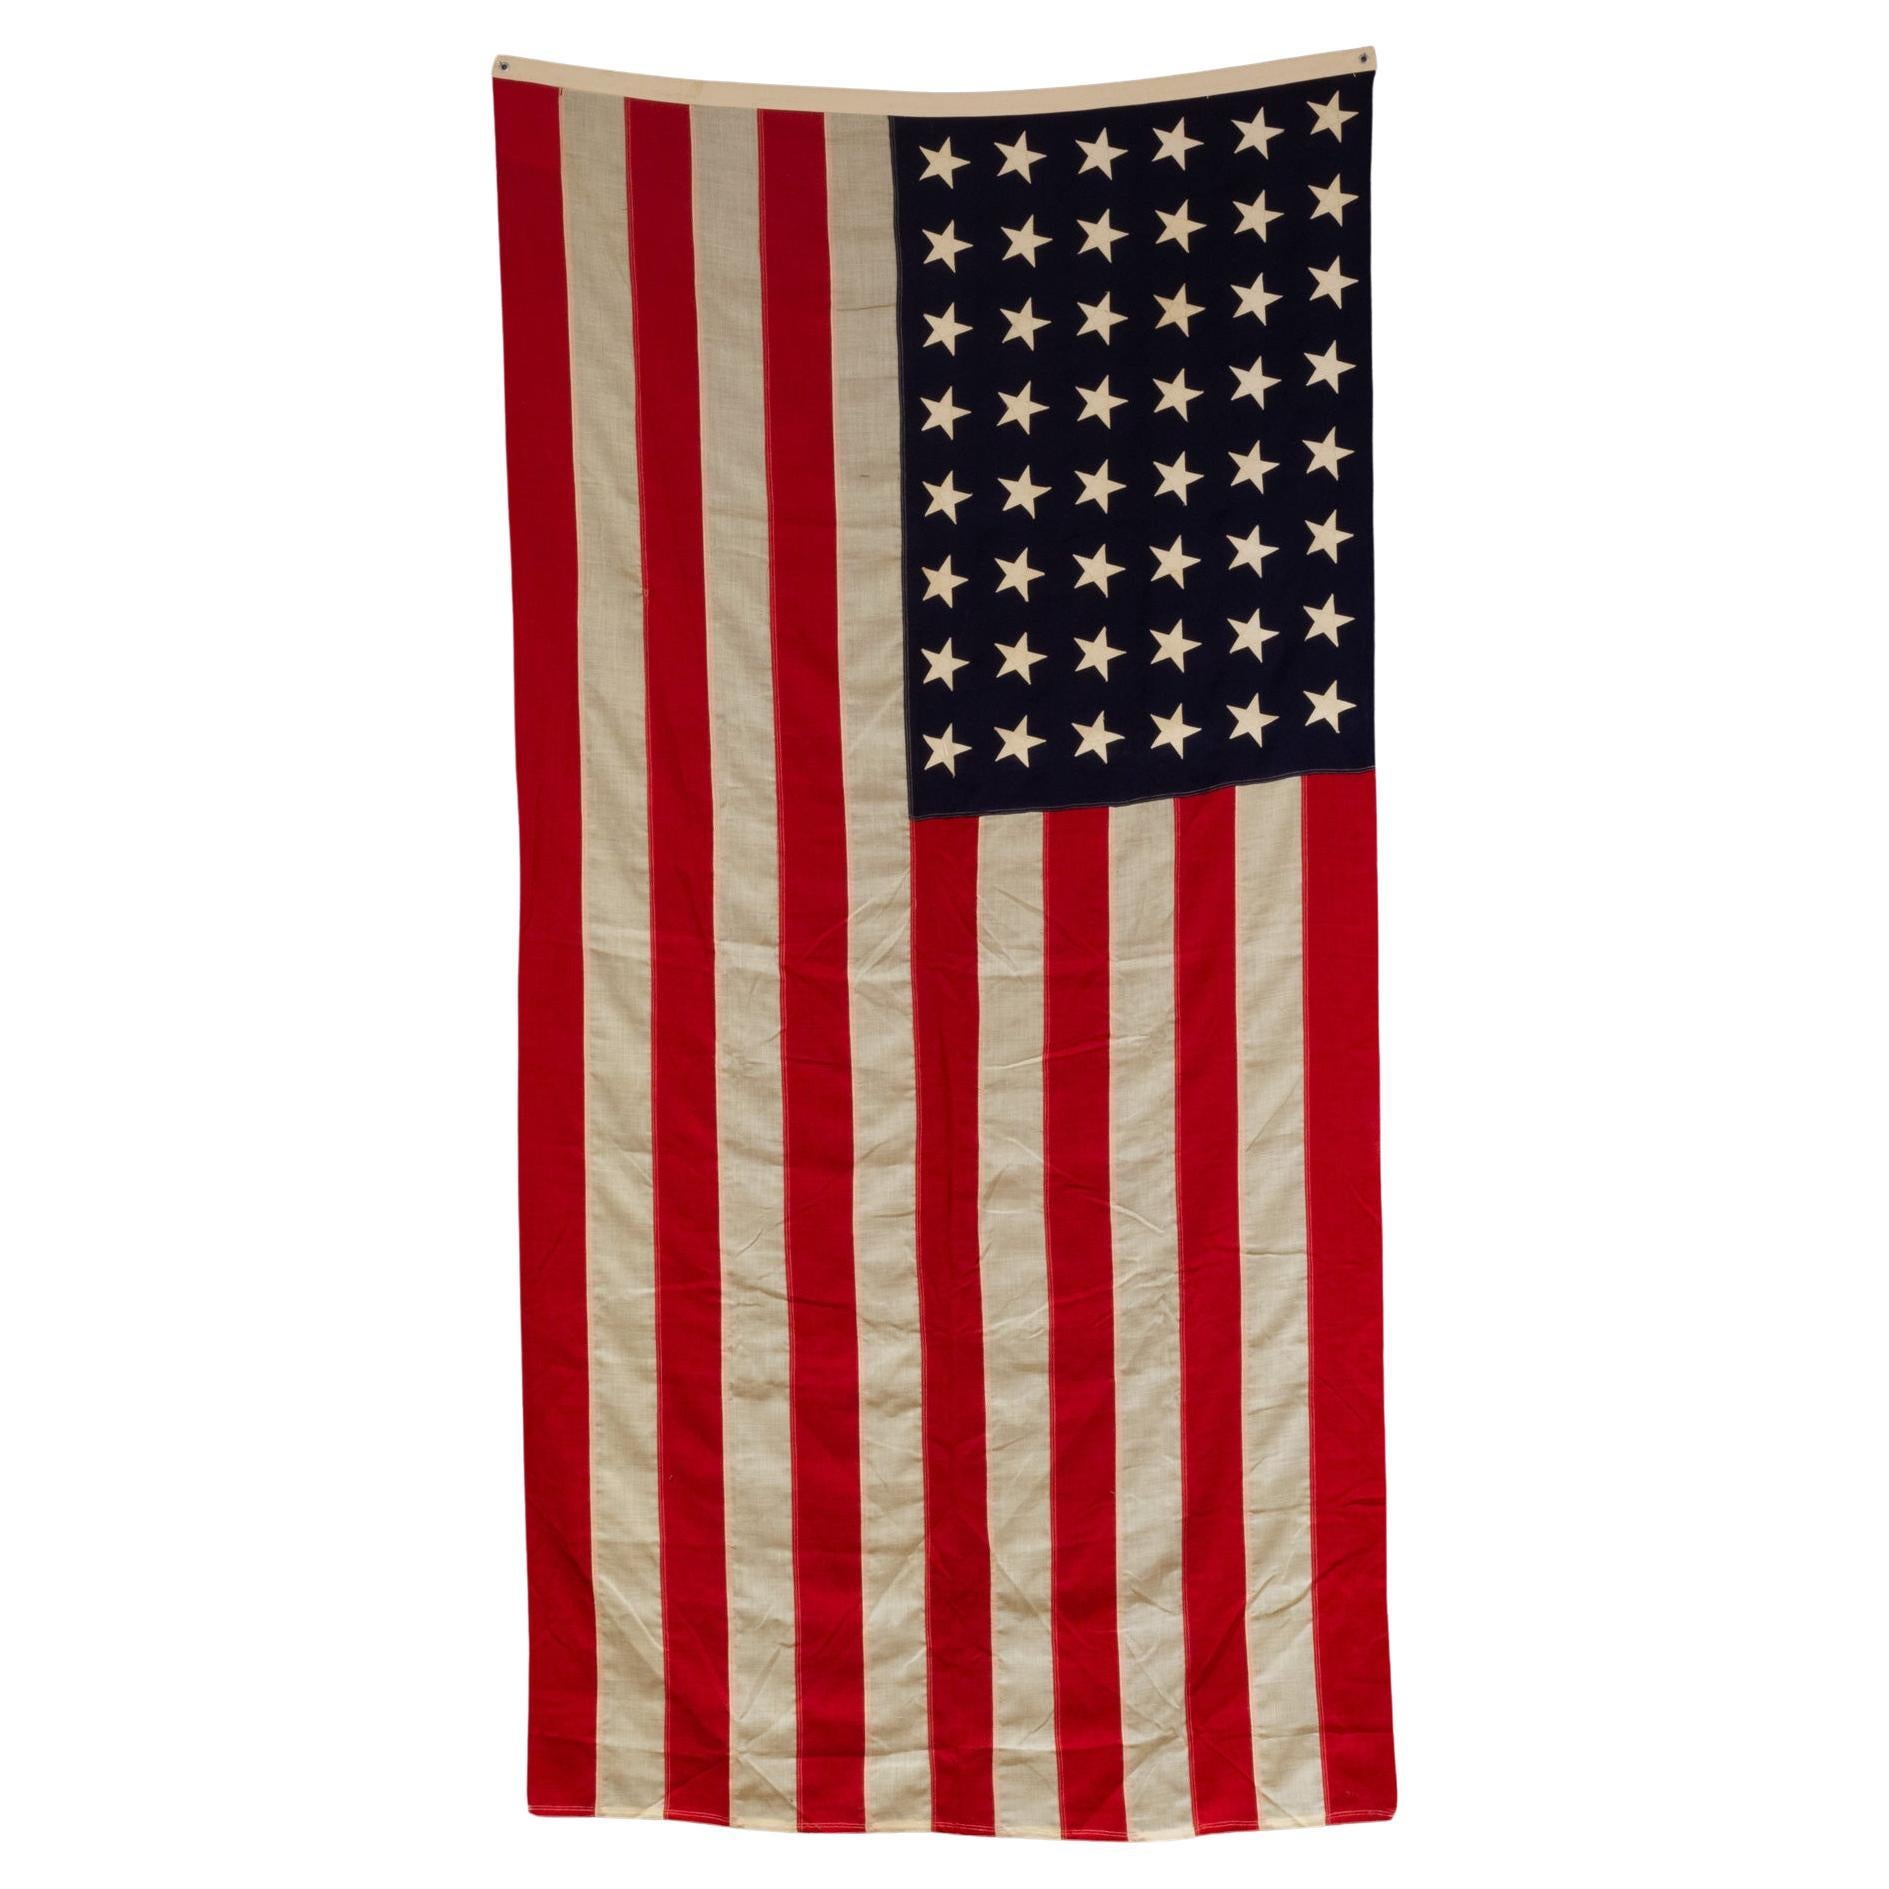 Grand drapeau américain en laine avec 48 étoiles, vers 1940-1950, expédition gratuite en vente